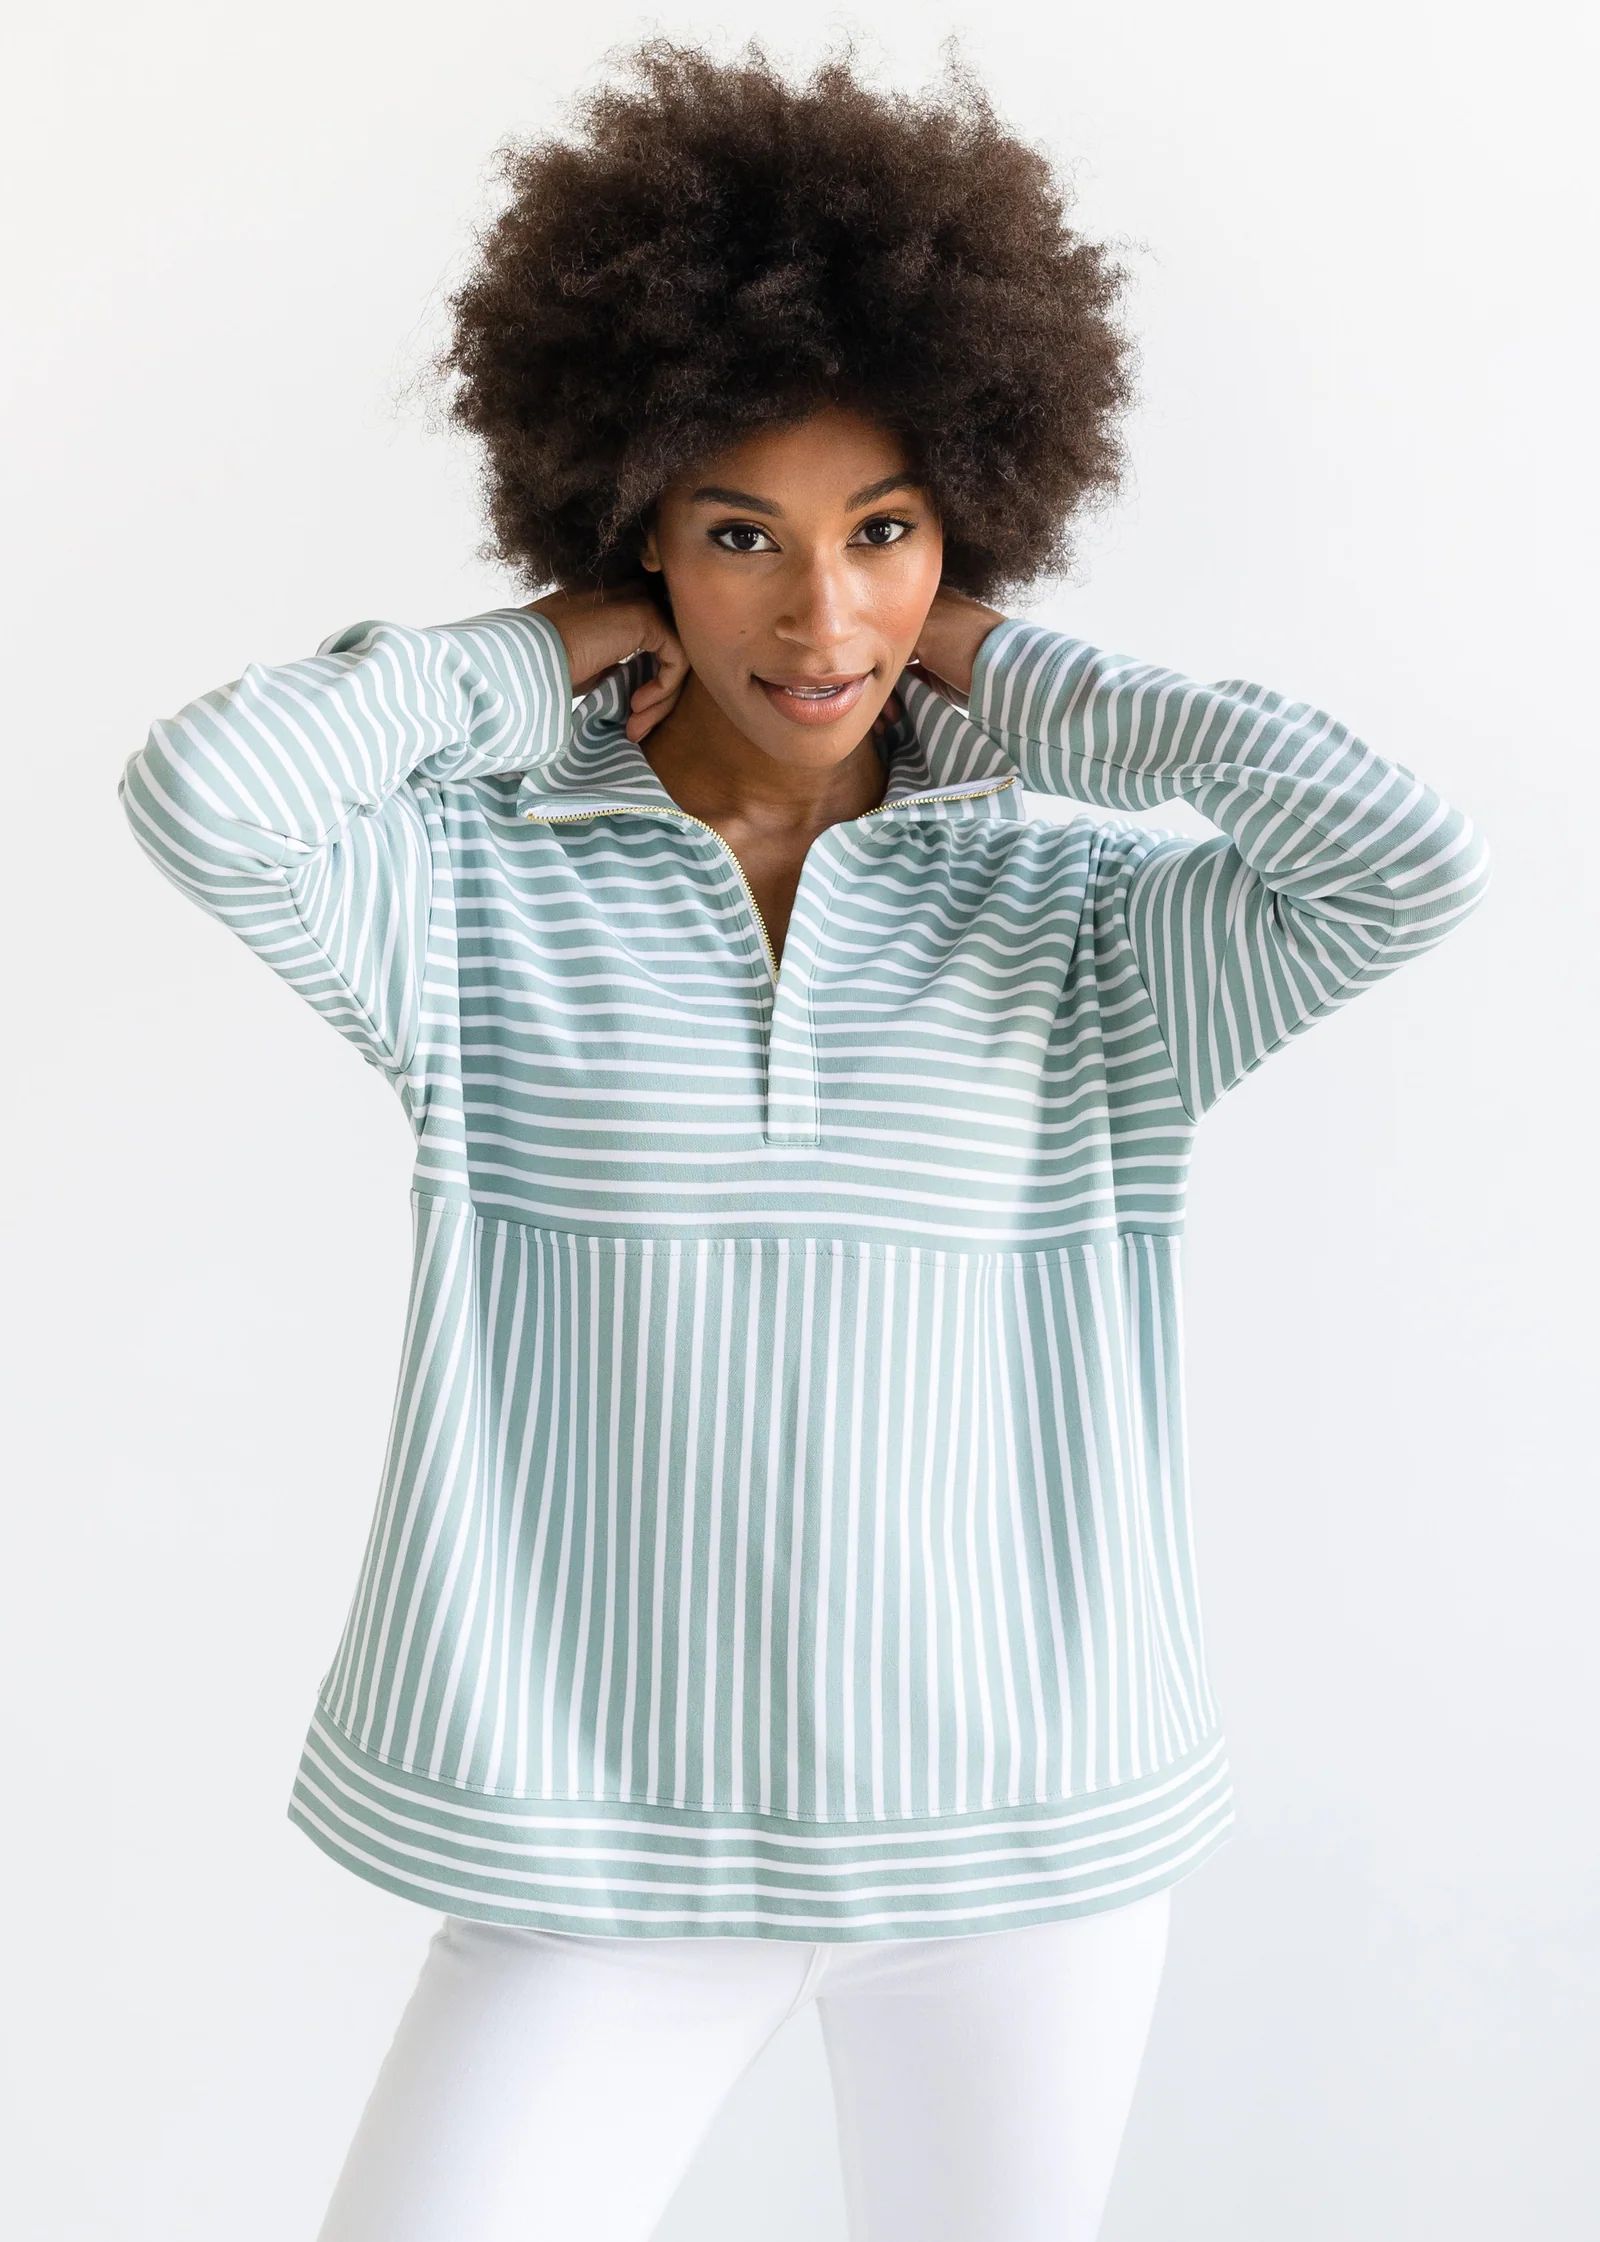 The Zip-Up Sweatshirt - Striped | Alice Walk